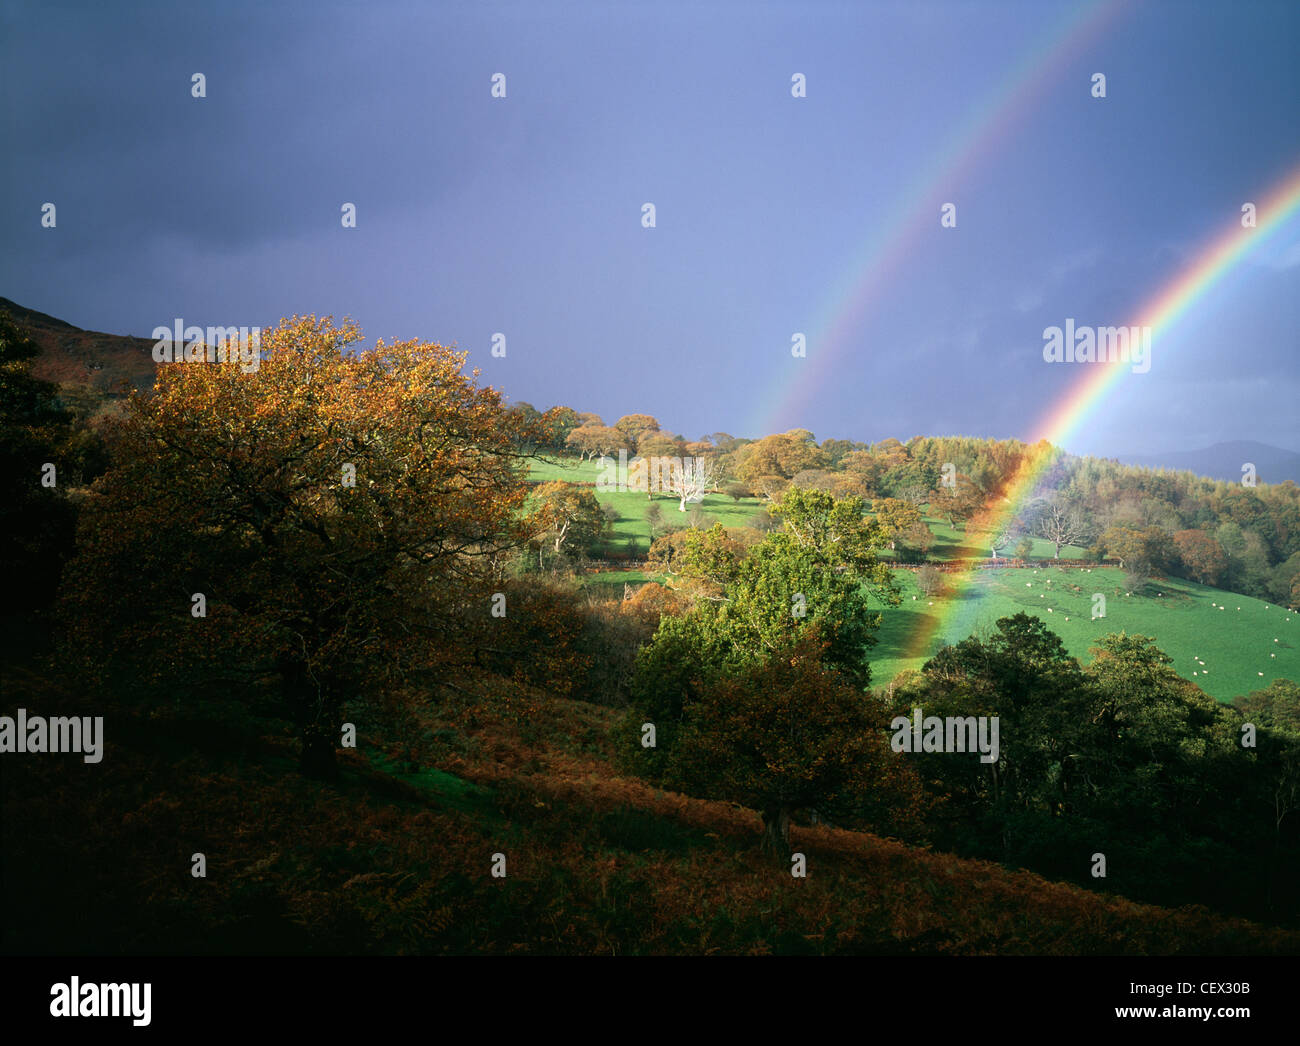 Sturm mit doppelter Regenbogen gegen dunklen Himmel über walisischen Hügeln. Stockfoto